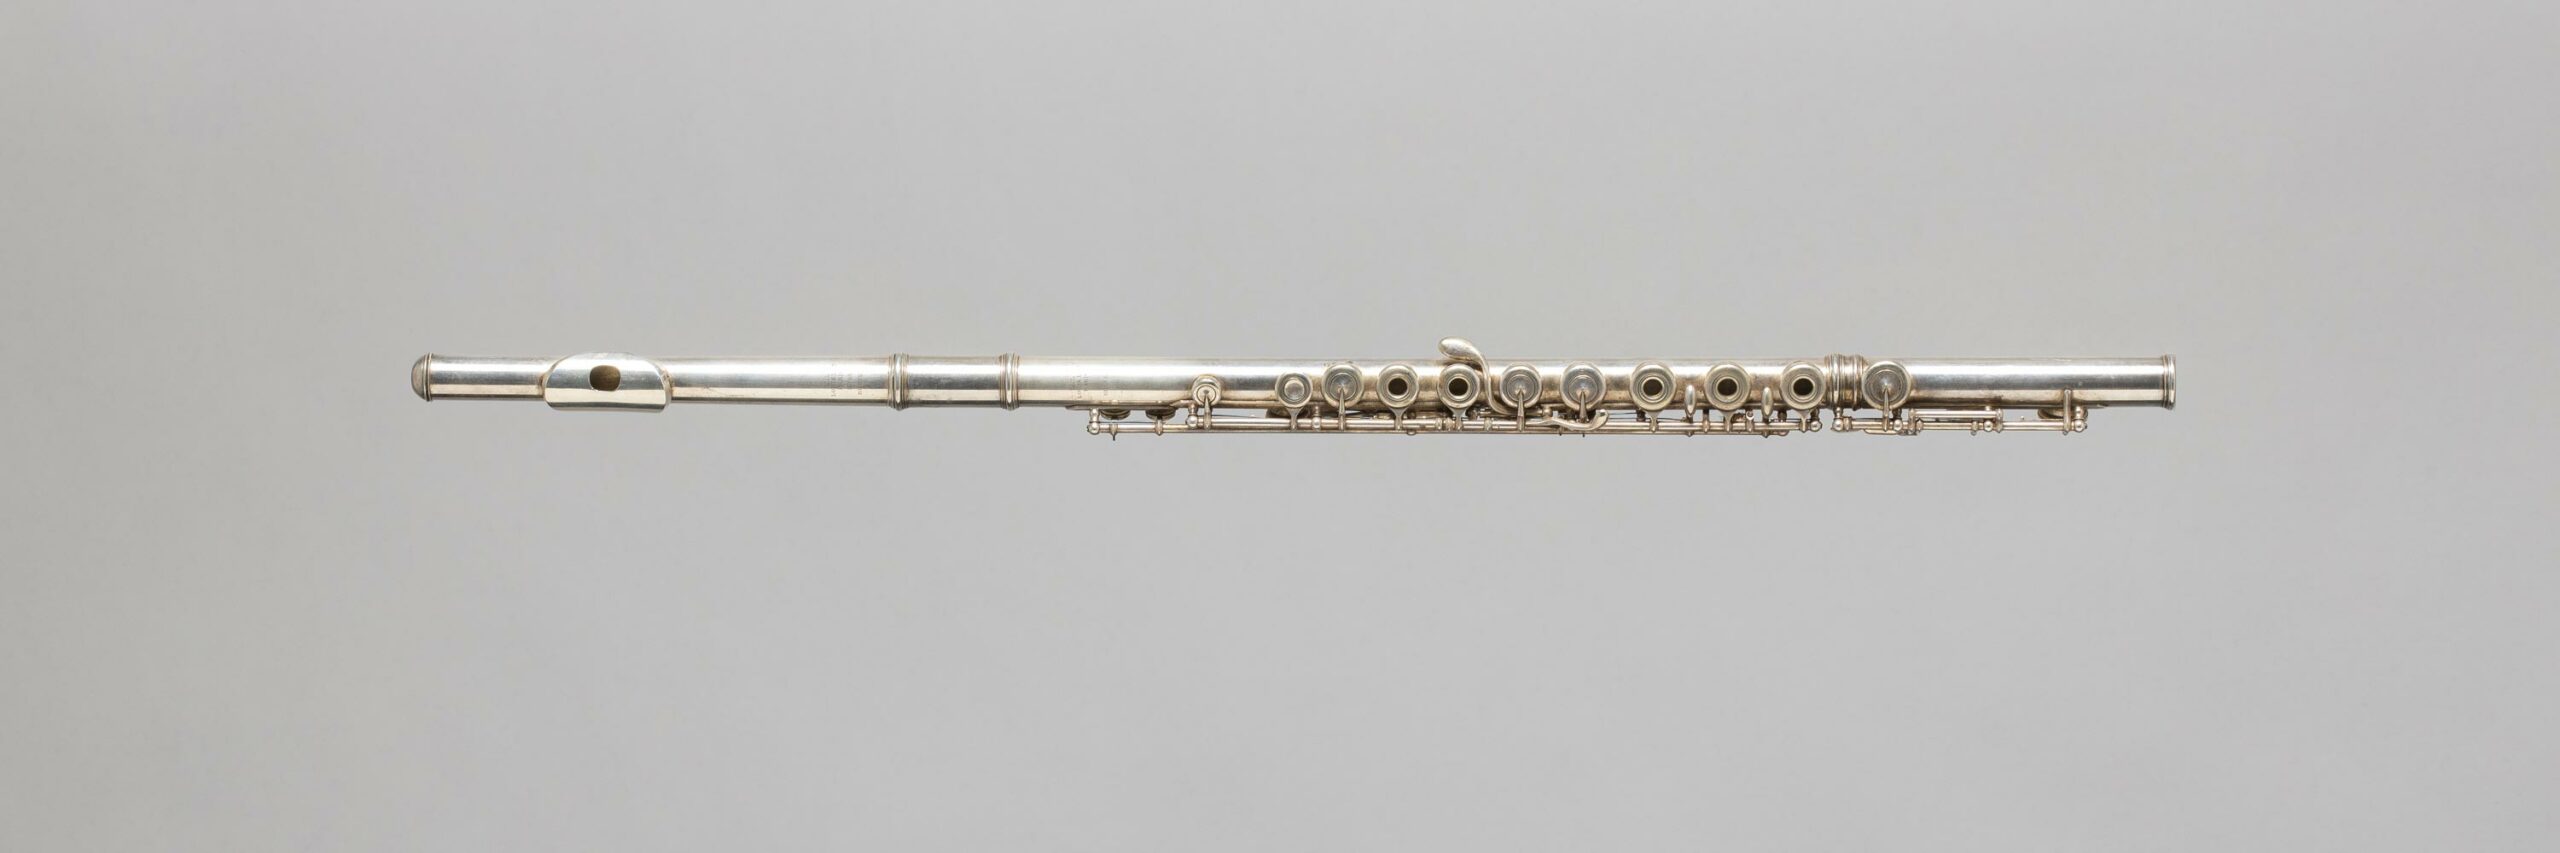 Flûte en métal argenté, système Boehm, estampillée Louis LOT Instrument mis en vente par Vichy Enchères le 5 novembre 2022 © C. Darbelet